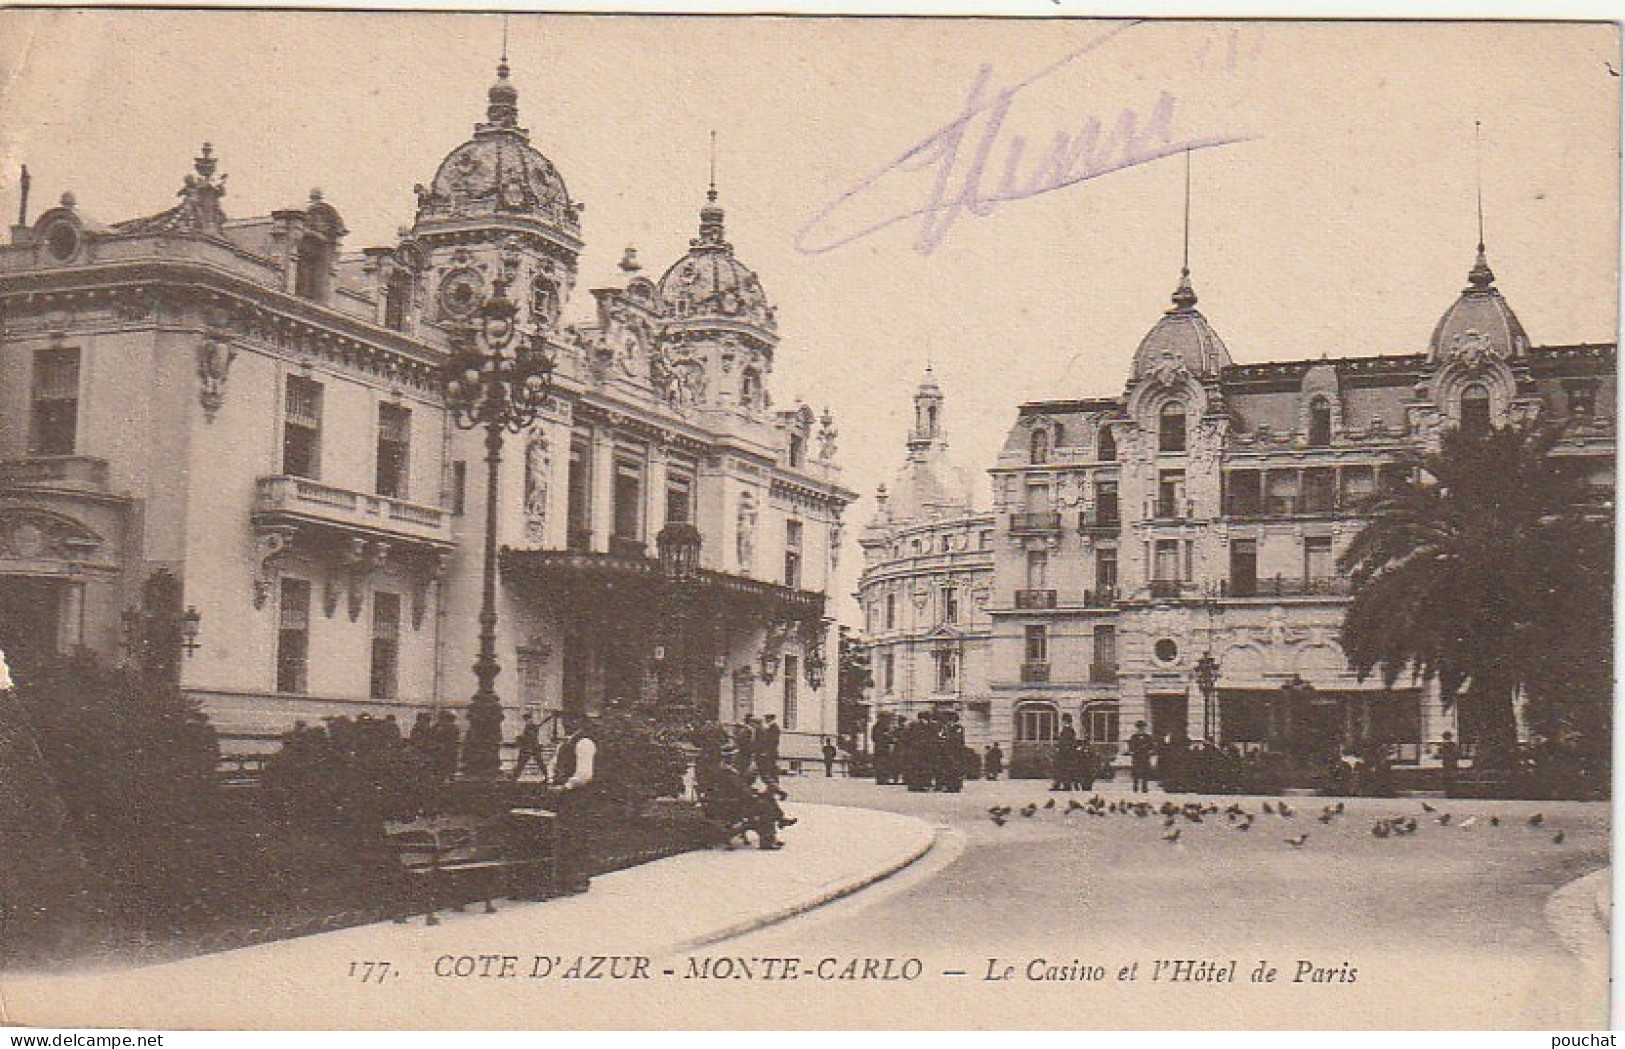 MO 14 - MONTE CARLO - LE CASINO ET L' HOTEL DE PARIS - 2 SCANS - Hotels